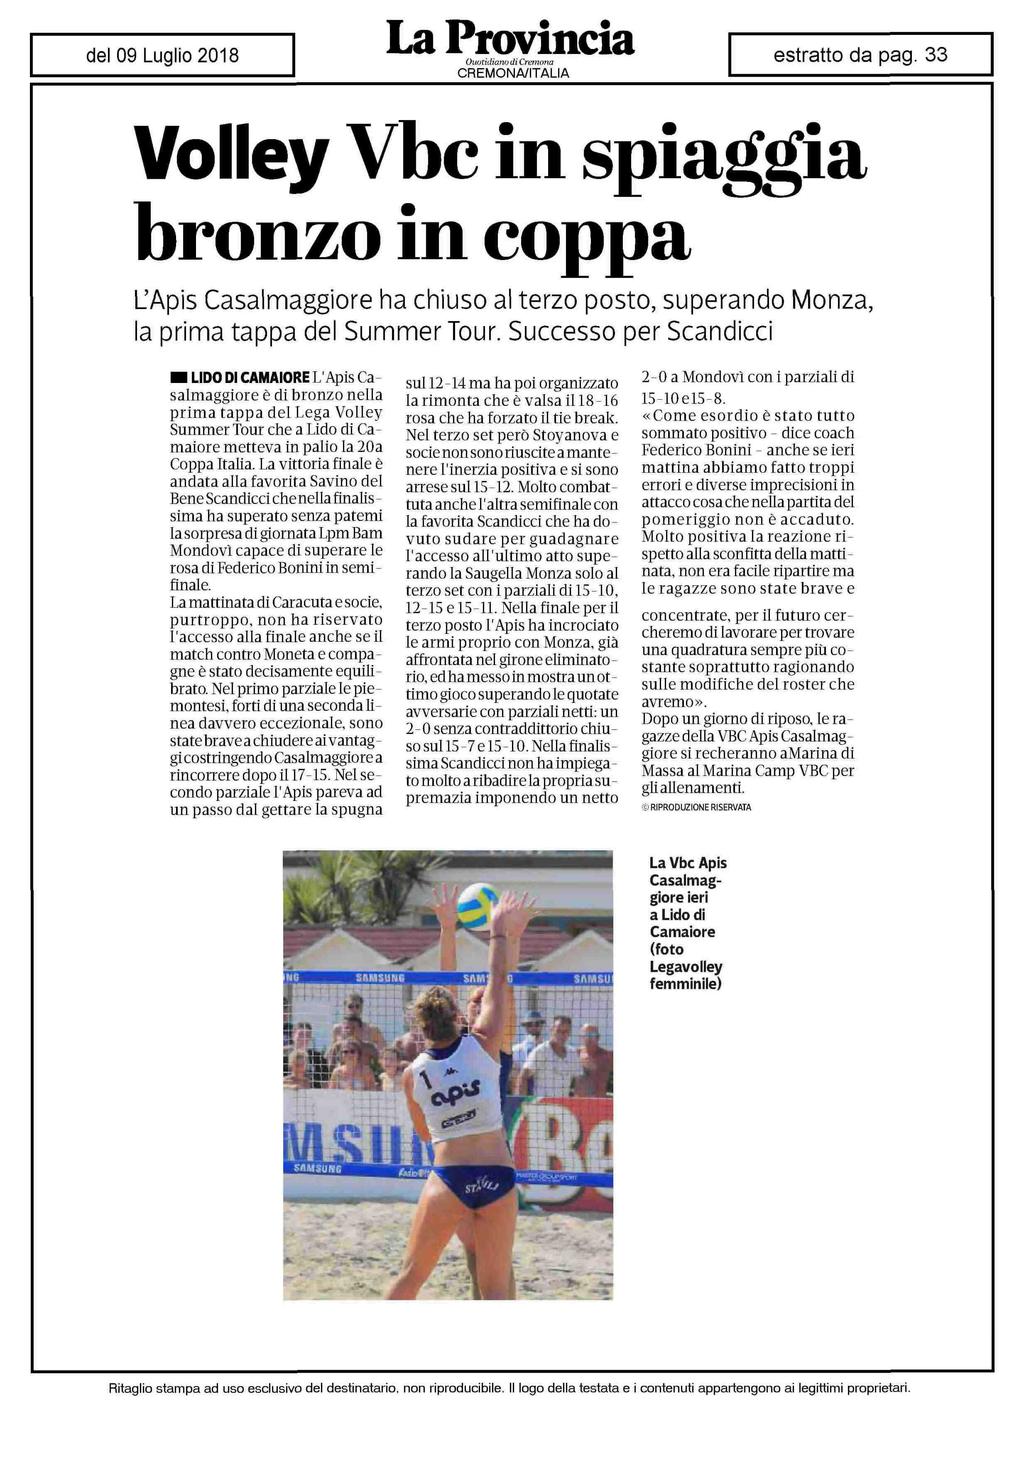 Volley Vbc in spiaggia bronzo in coppa L'Apis Casalmaggiore ha chiuso al terzo posto, superando Monza, la prima tappa del Summer Tour.